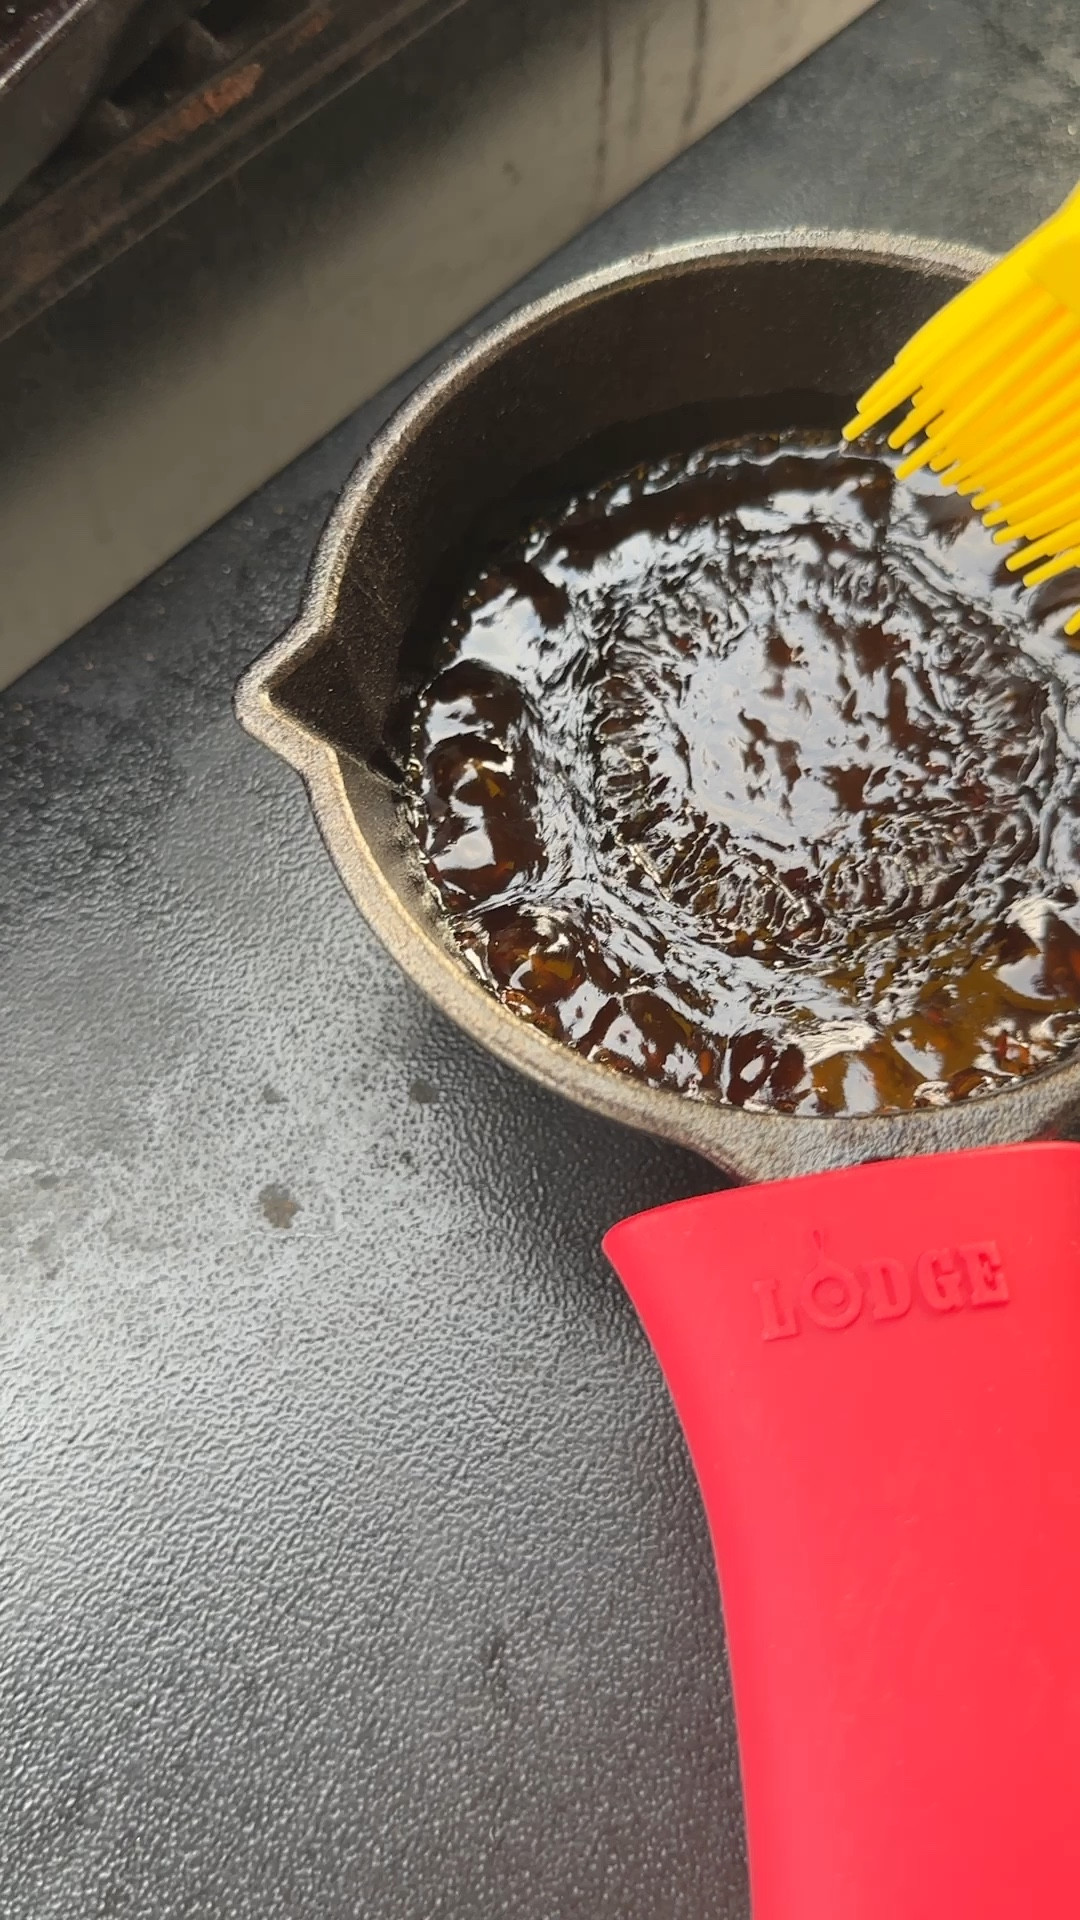 Lodge Cast Iron Melting Pot with Silicone Brush, Cast Iron